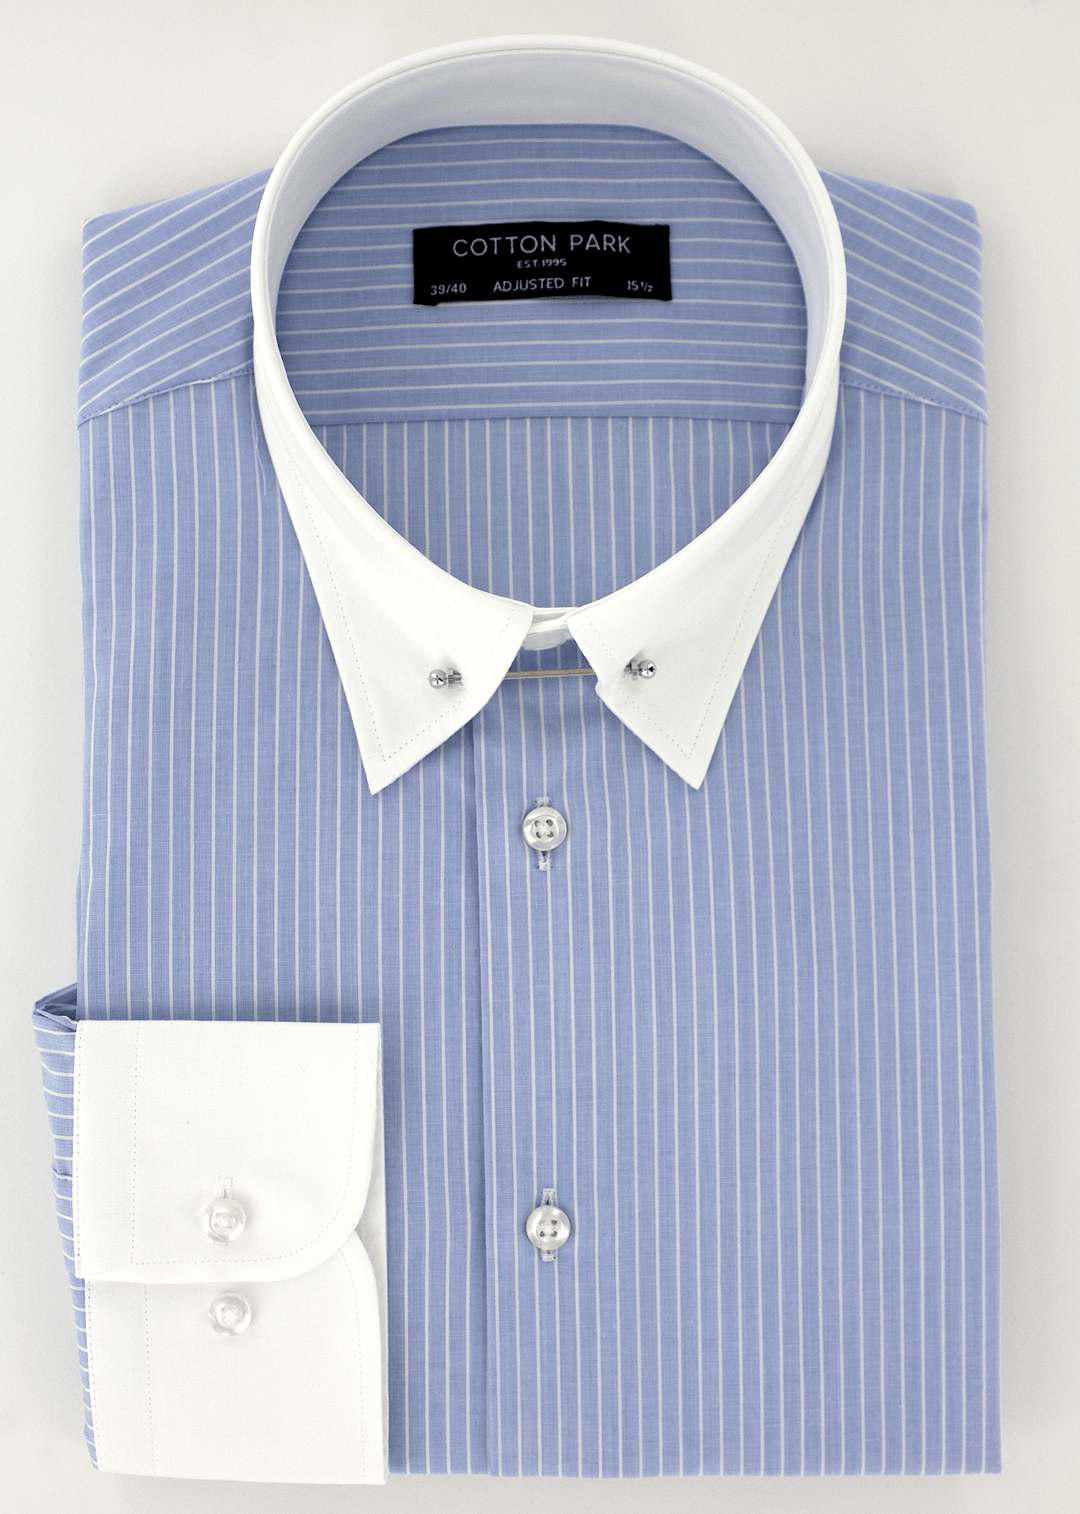 Chemise ajustée élégante pour homme col anglais bleu à fines rayures blanches | Cotton Park